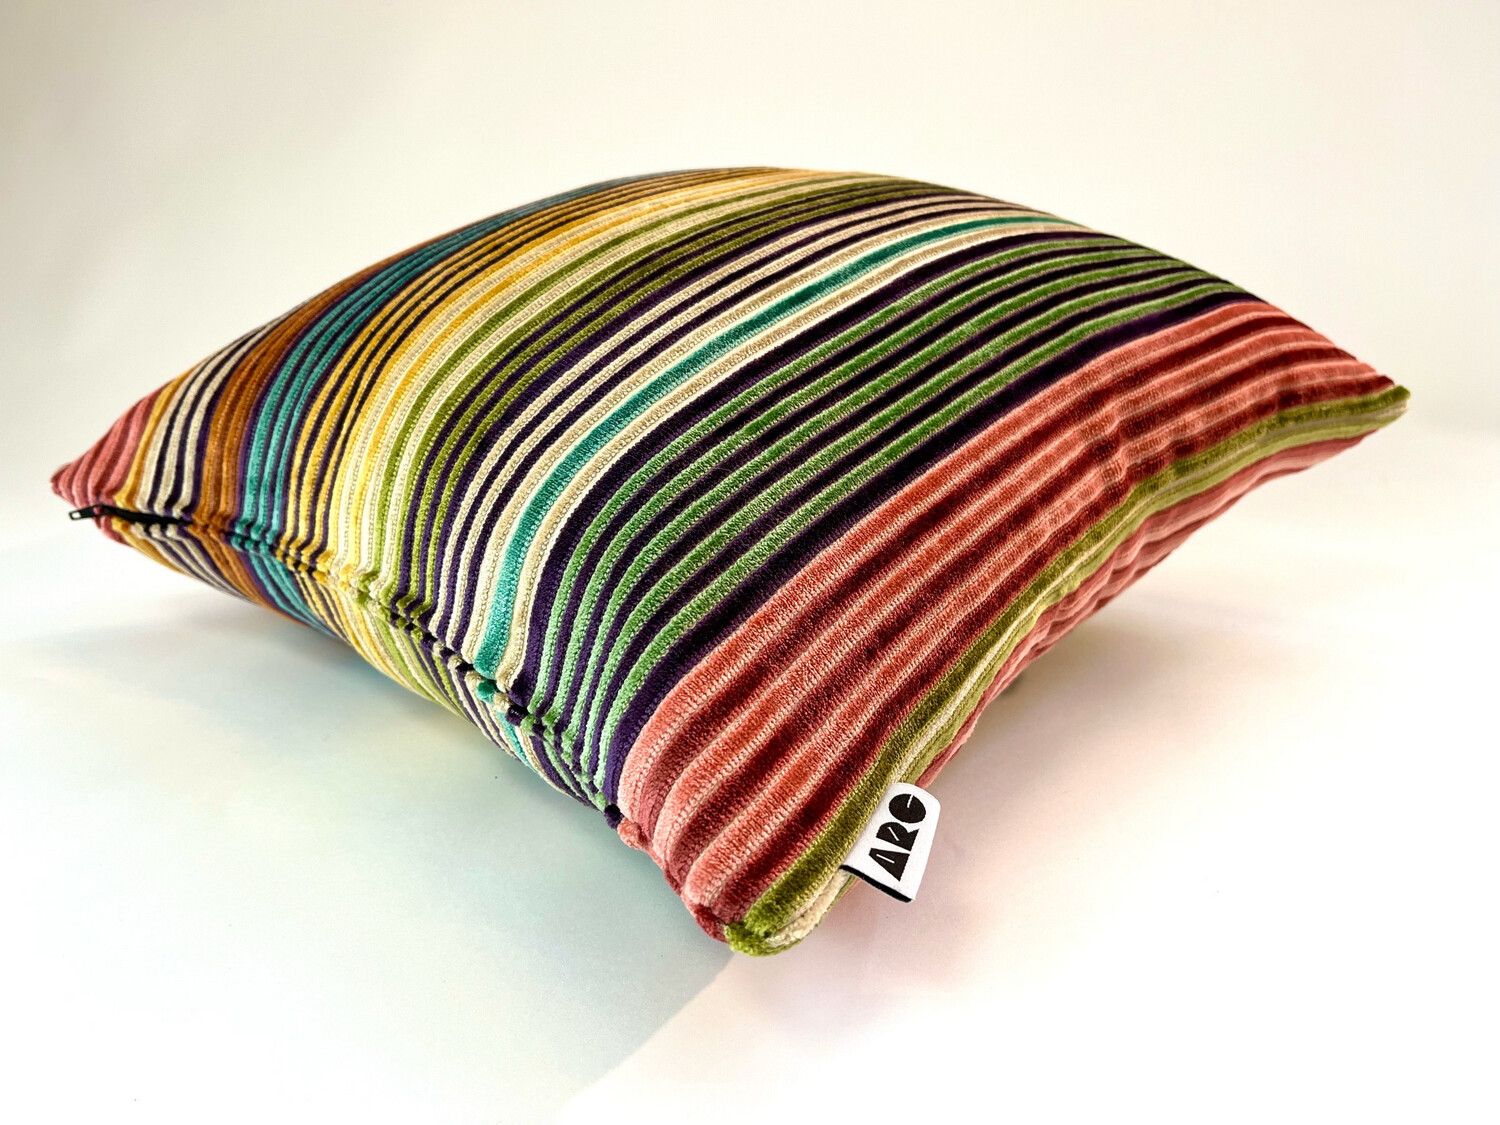 Missoni Libertad striped scatter cushions